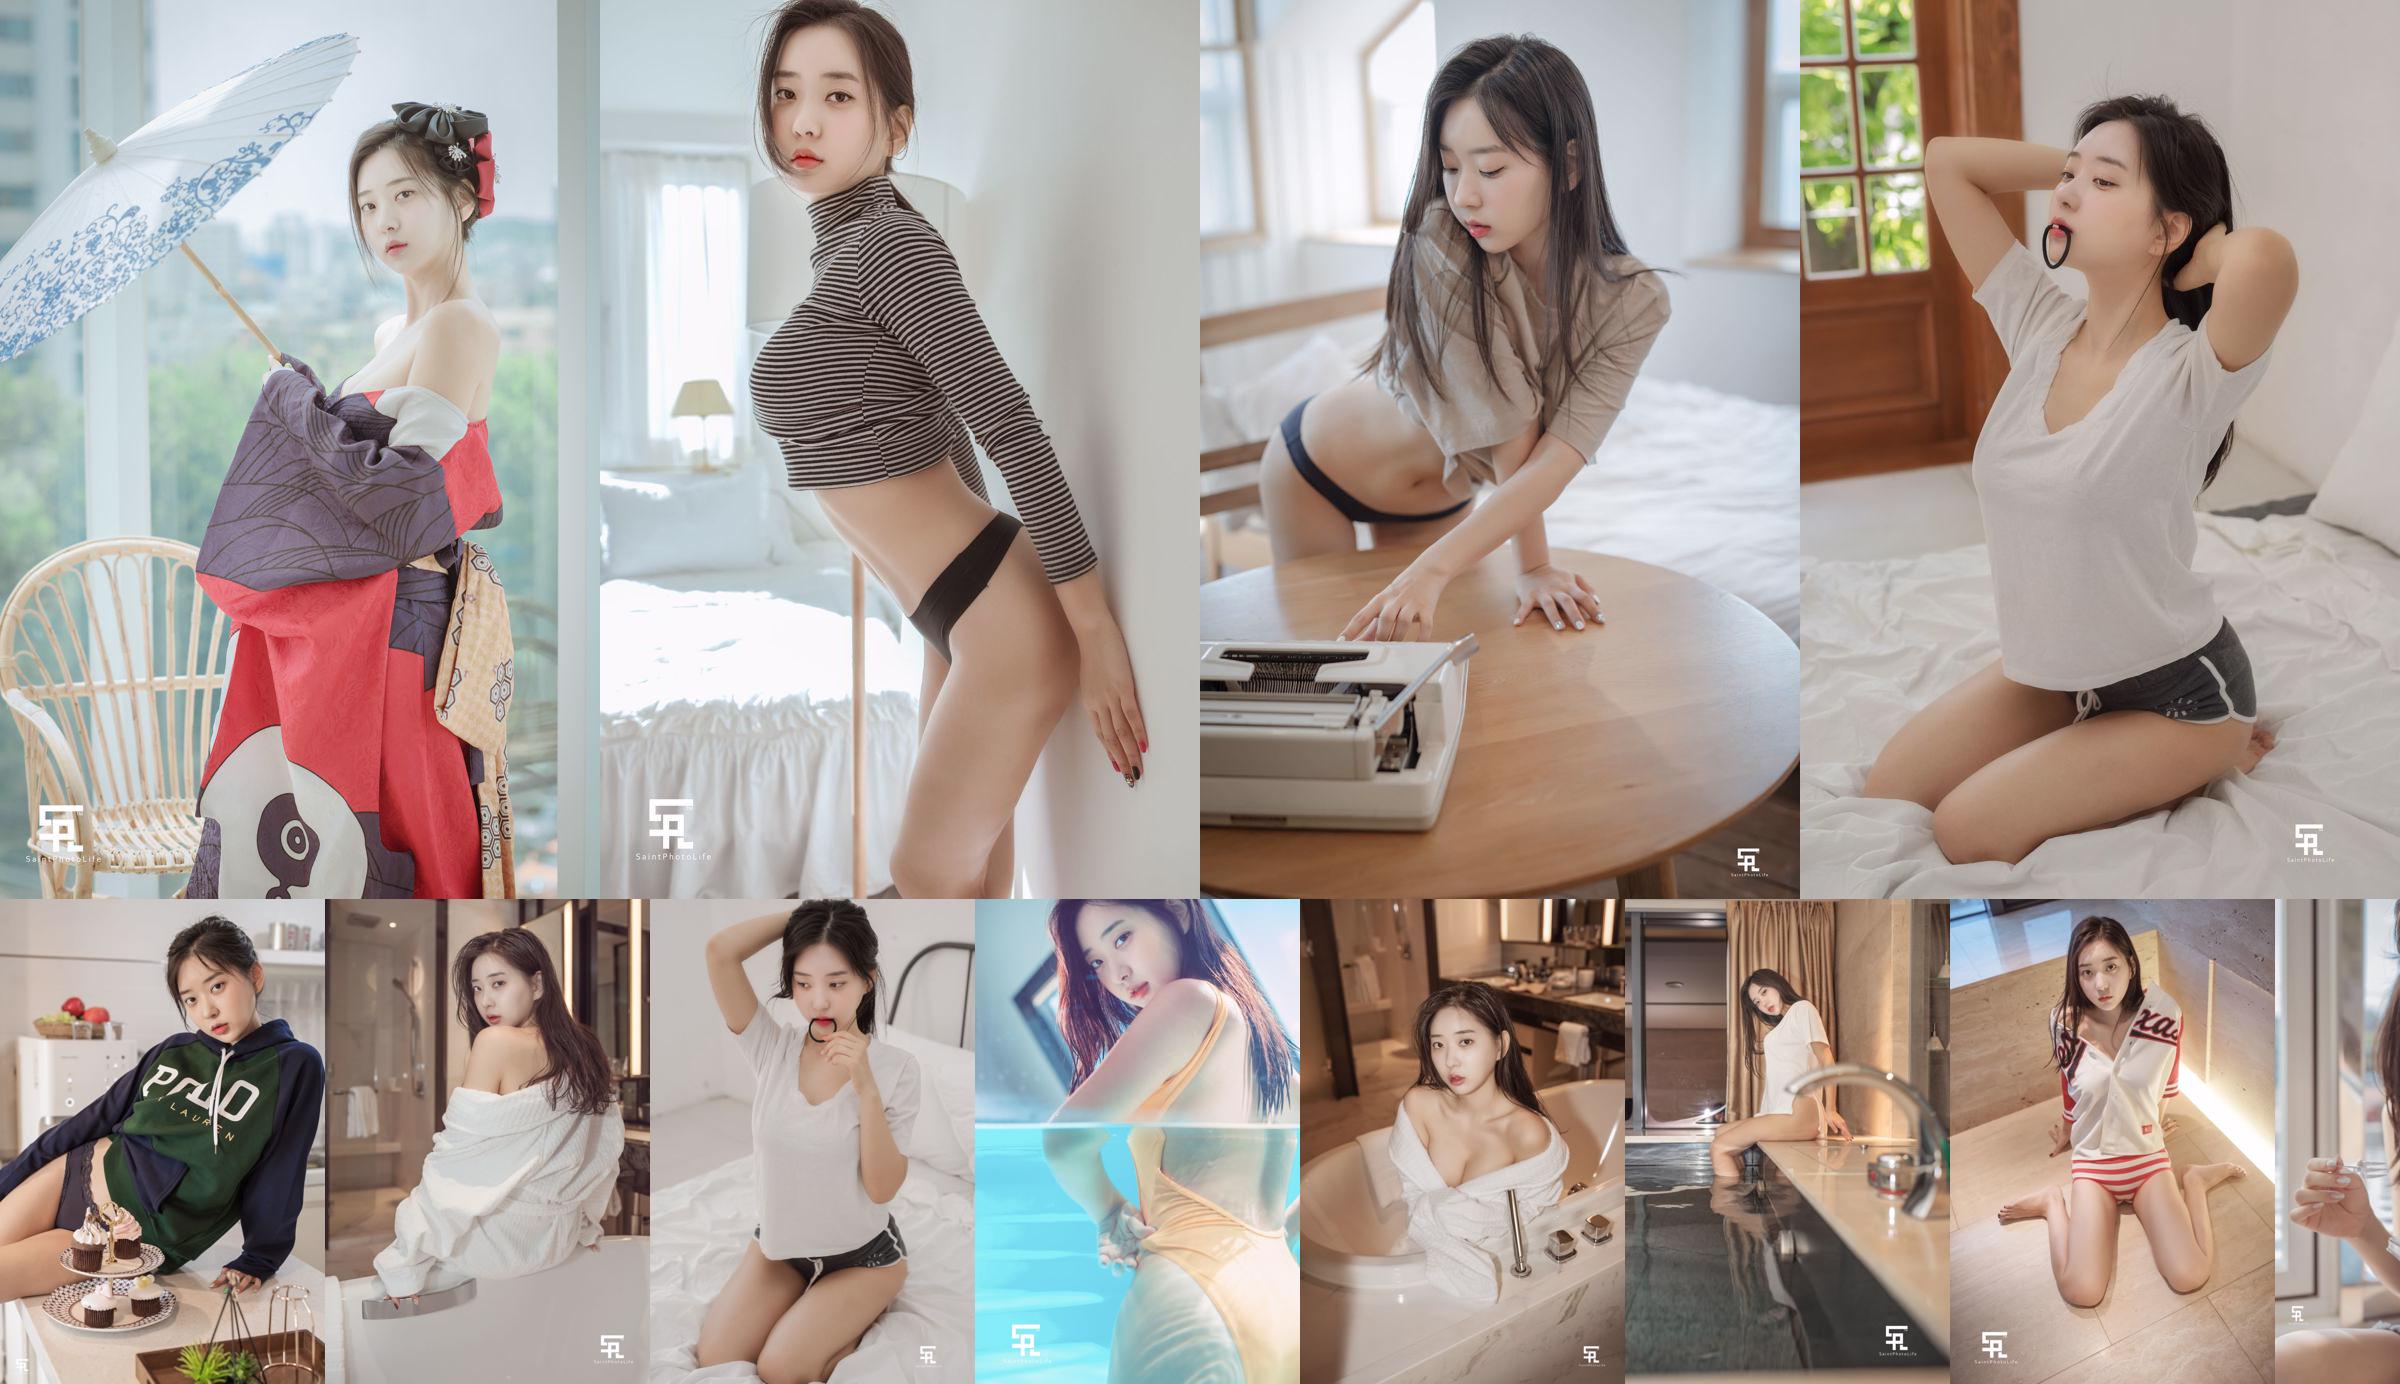 [saintphotolife] - Koreaans meisje Zenny foto 2019 zomer deel1 No.de67b6 Pagina 1